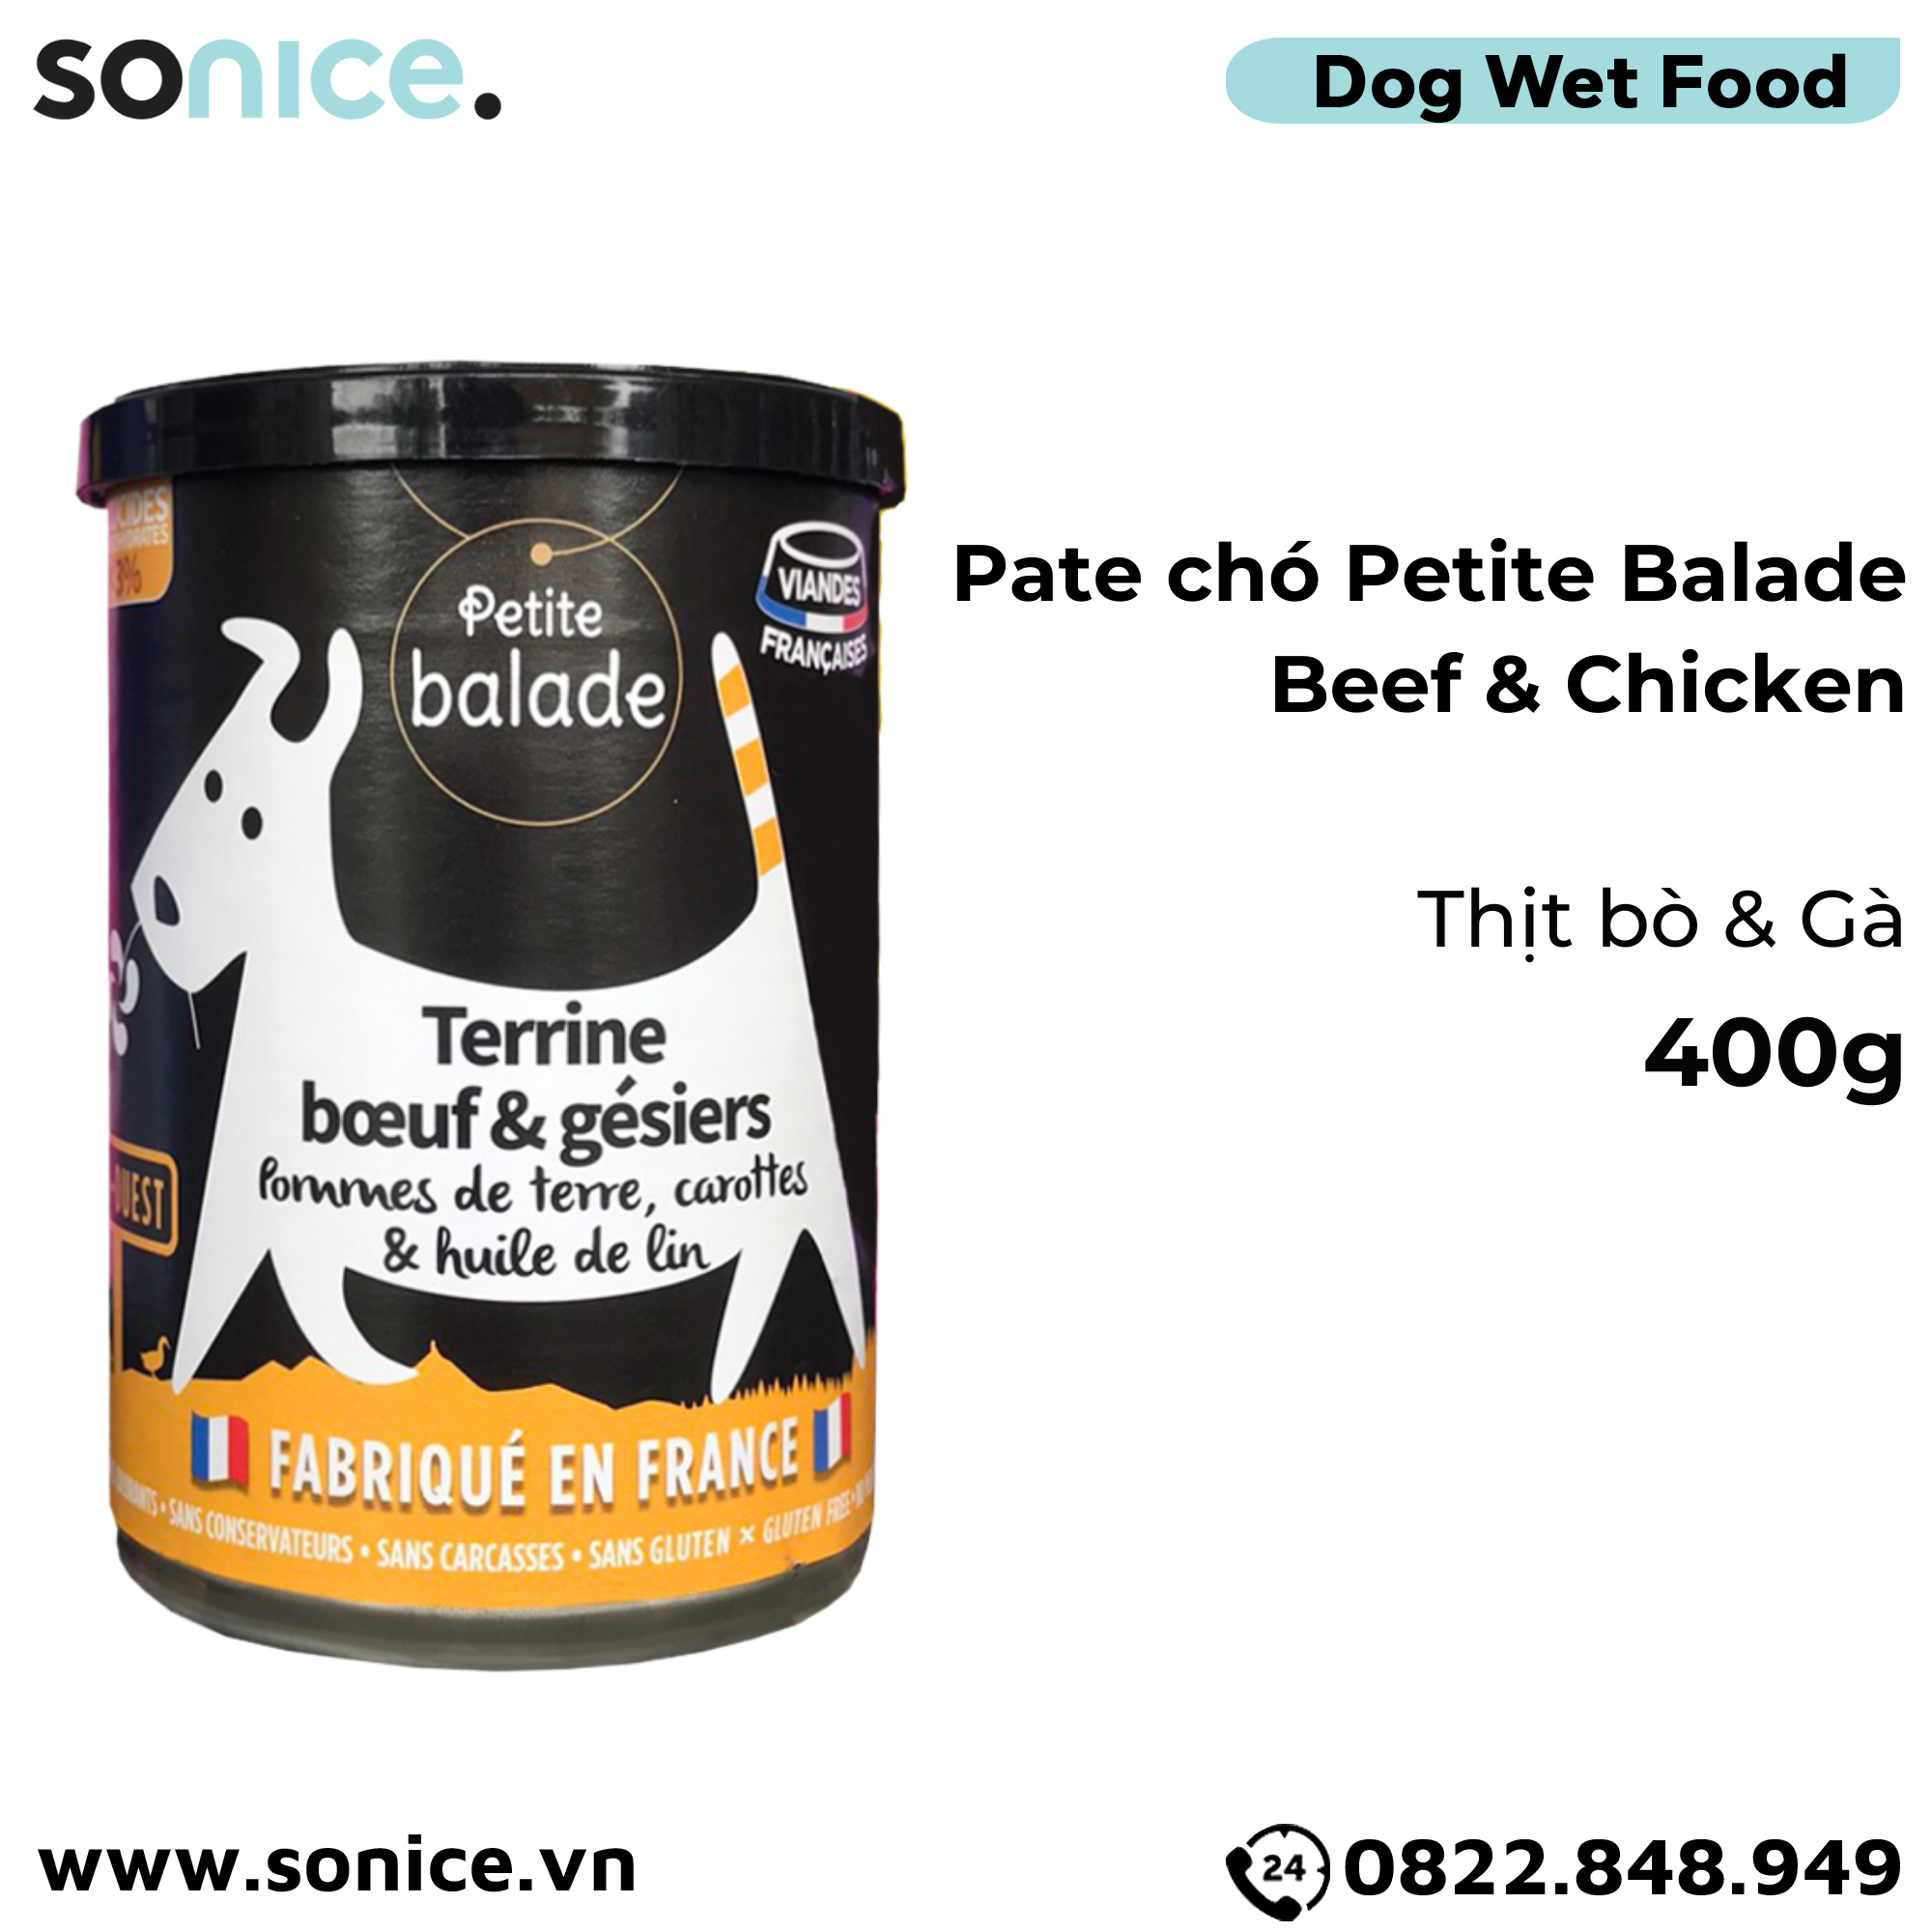  Combo Pate chó Petite Balade 400g mix 4 vị - Thịt heo, bò & gà, cừu, cá chày - 12 lon SONICE. 